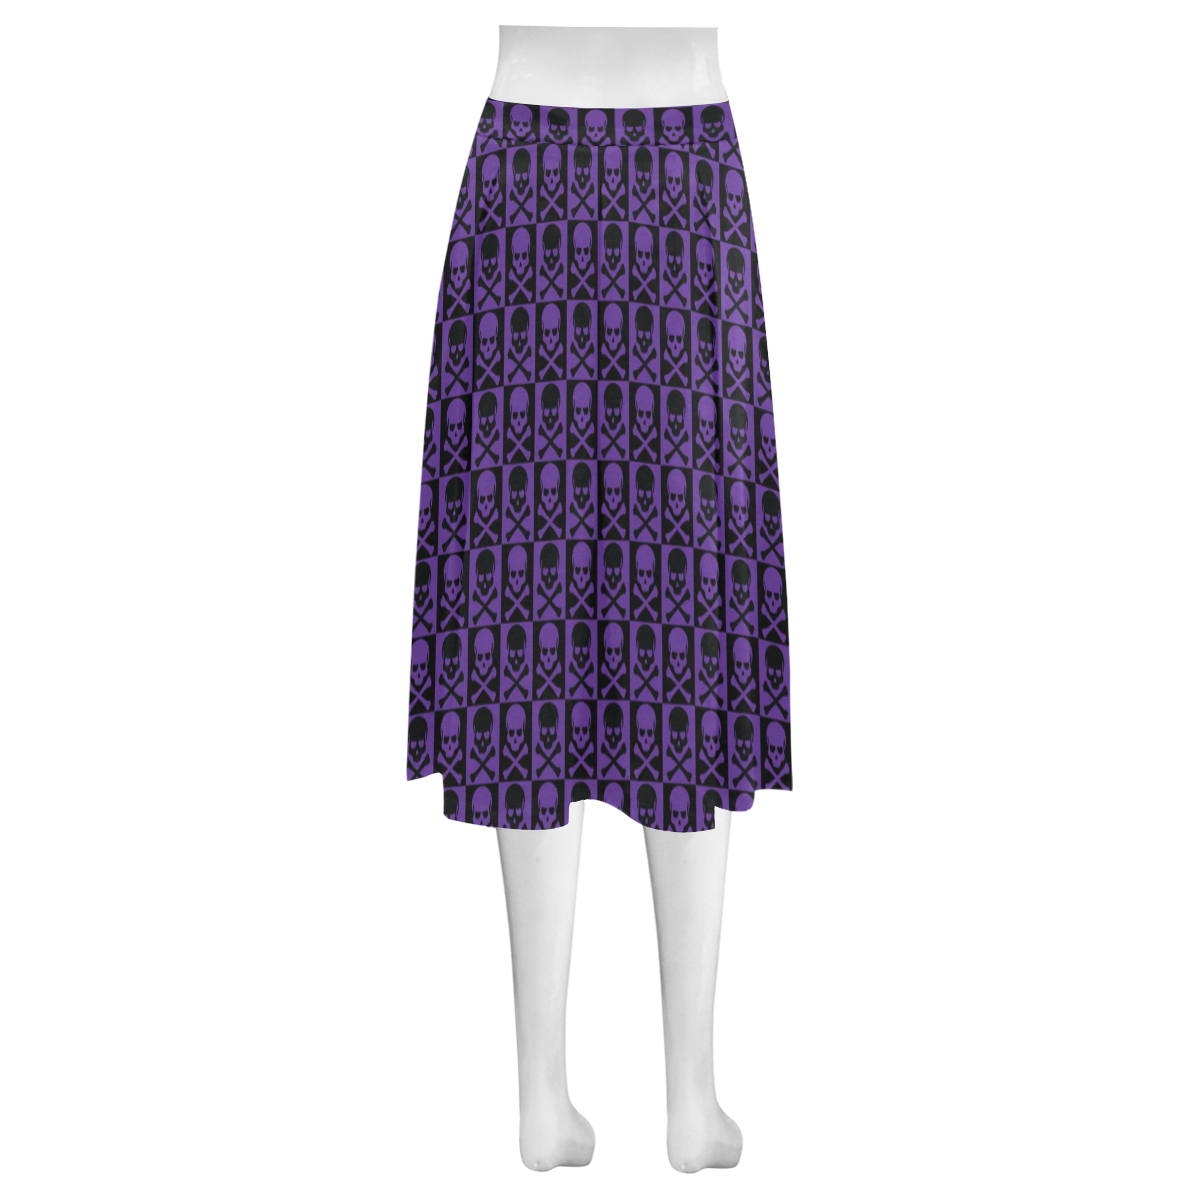 Gothic style Purple & Black Skulls Mnemosyne Women's Crepe Skirt (Model D16)